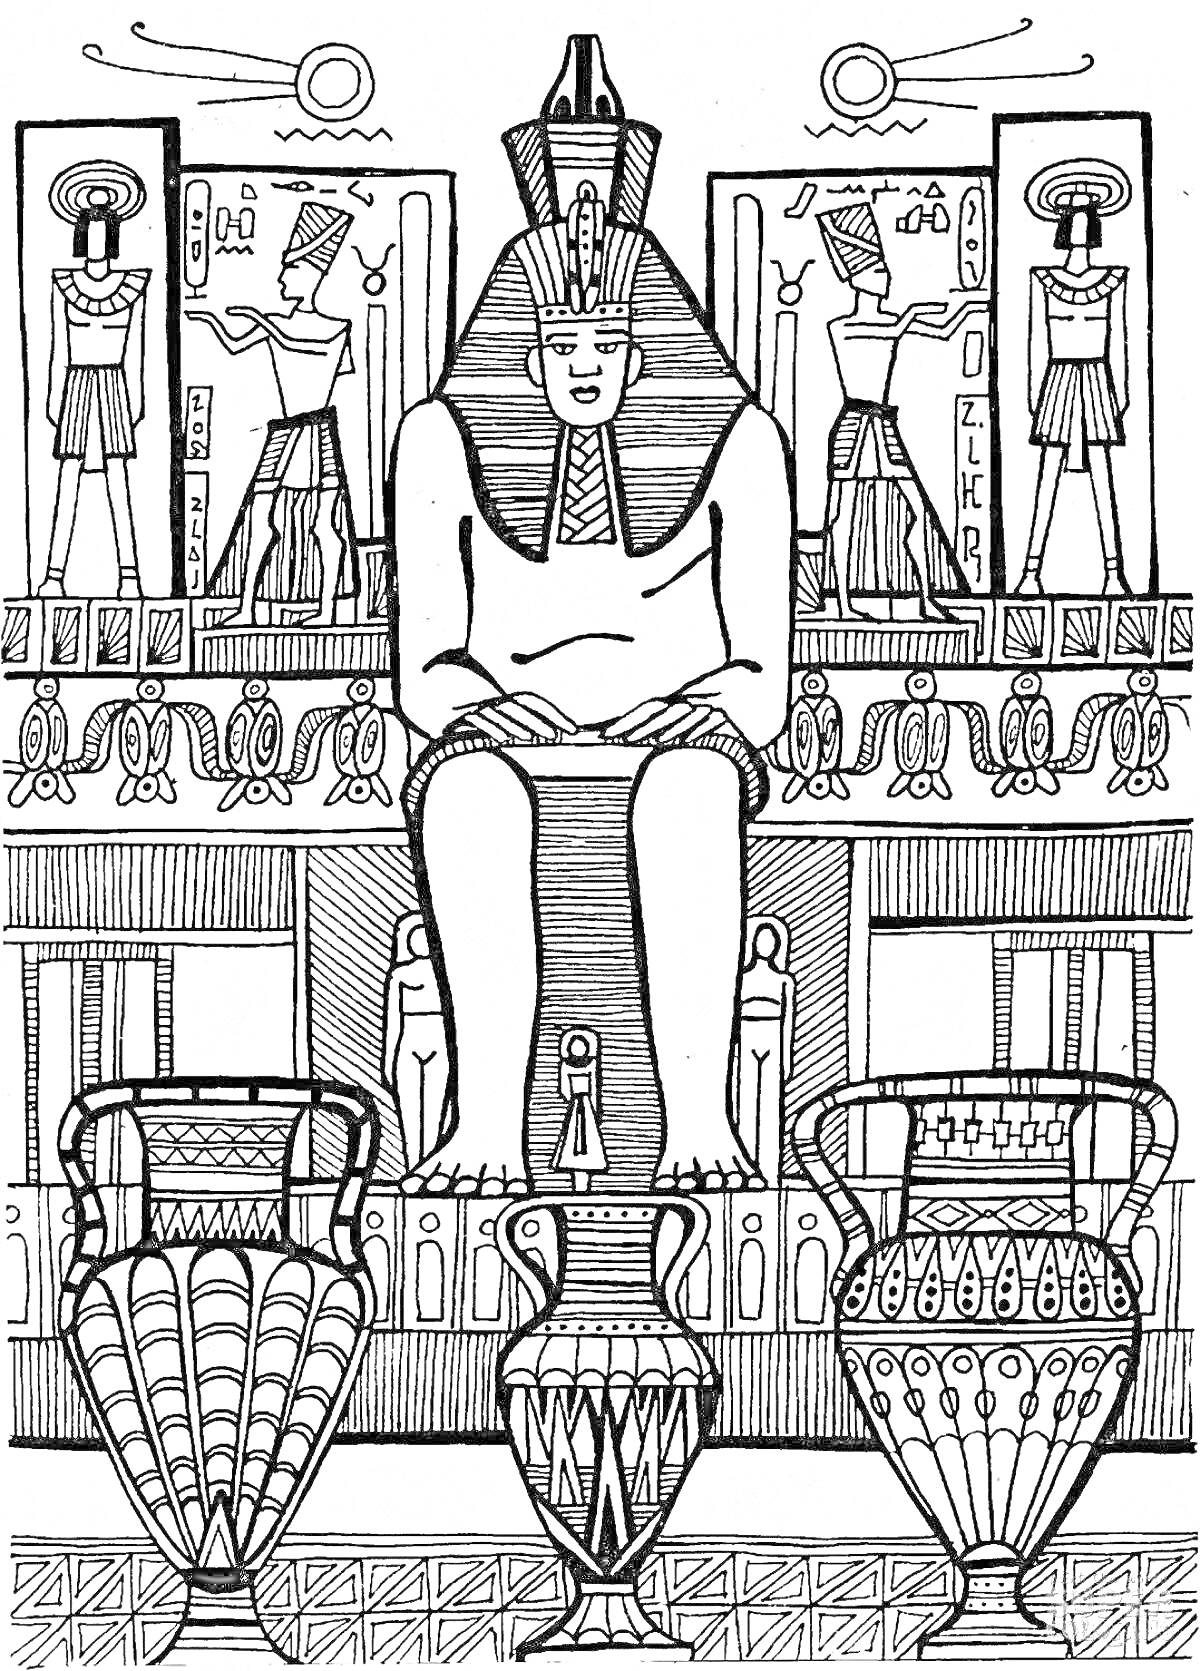 Фараон на троне среди амфор и иероглифов